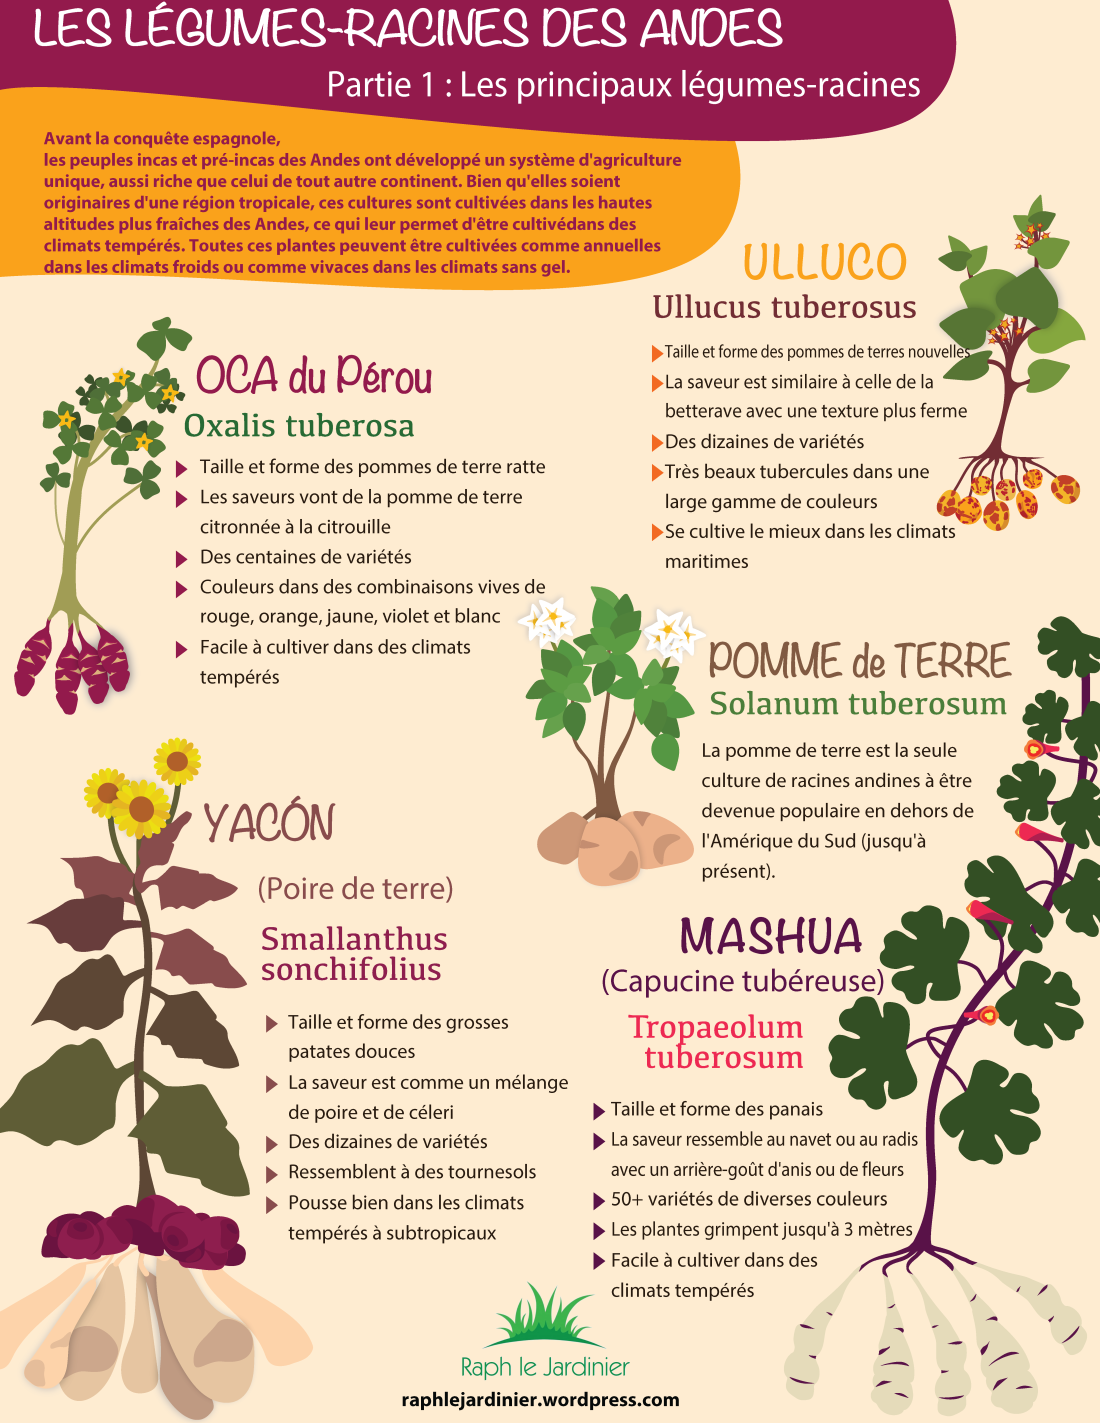 Les légumes-racines des Andes (Partie 1)